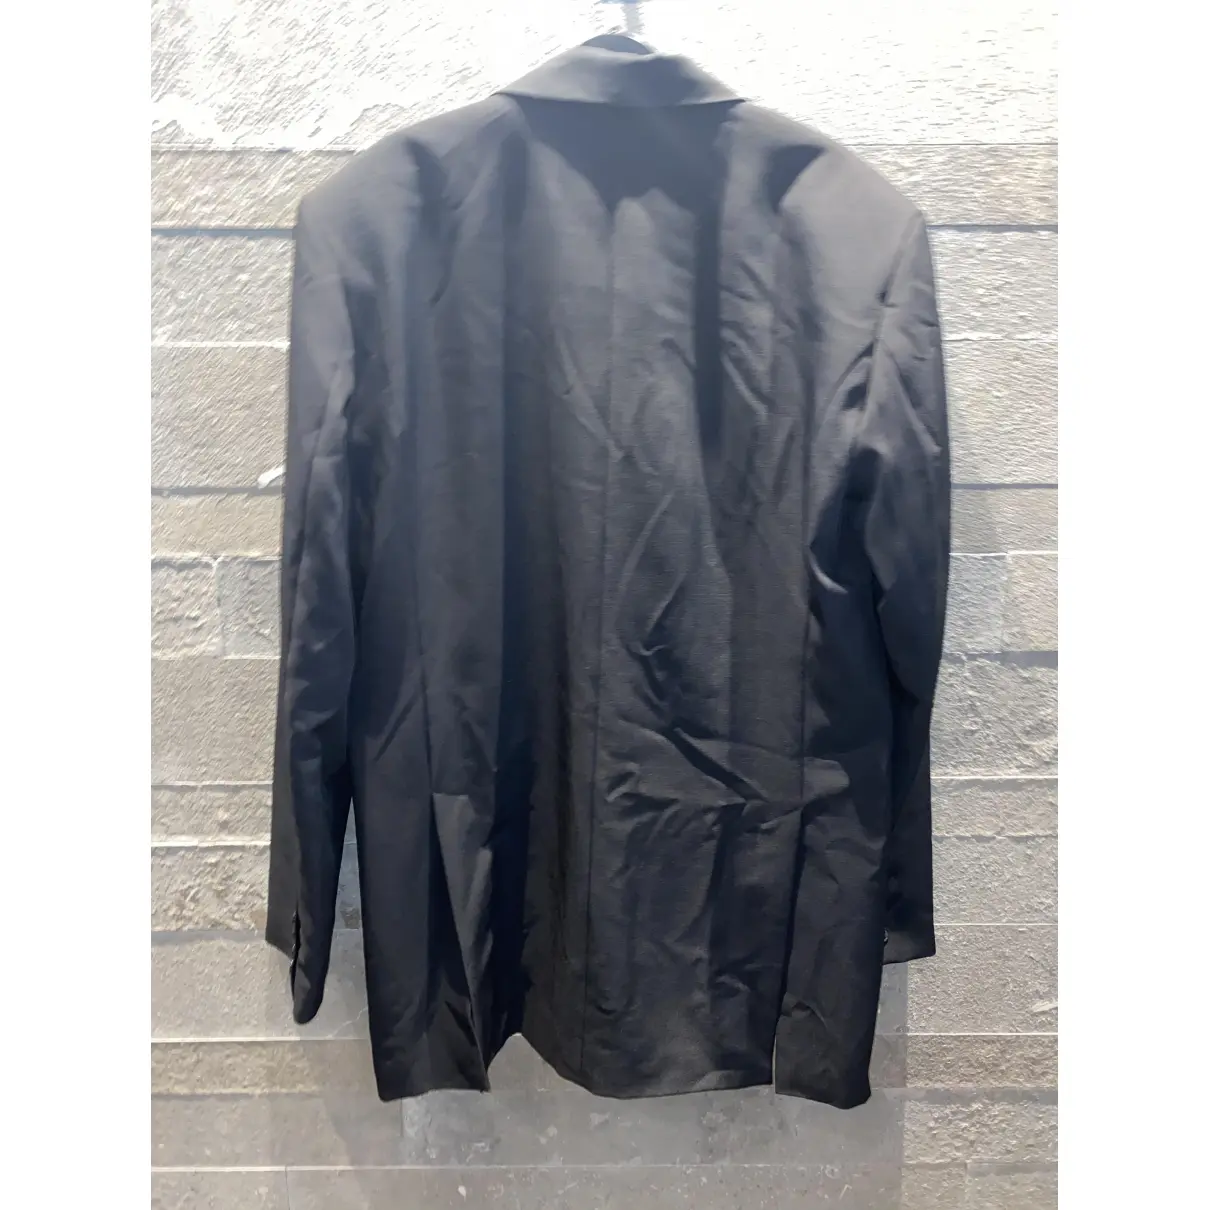 Buy Birgitte Herskind Black Polyester Jacket online